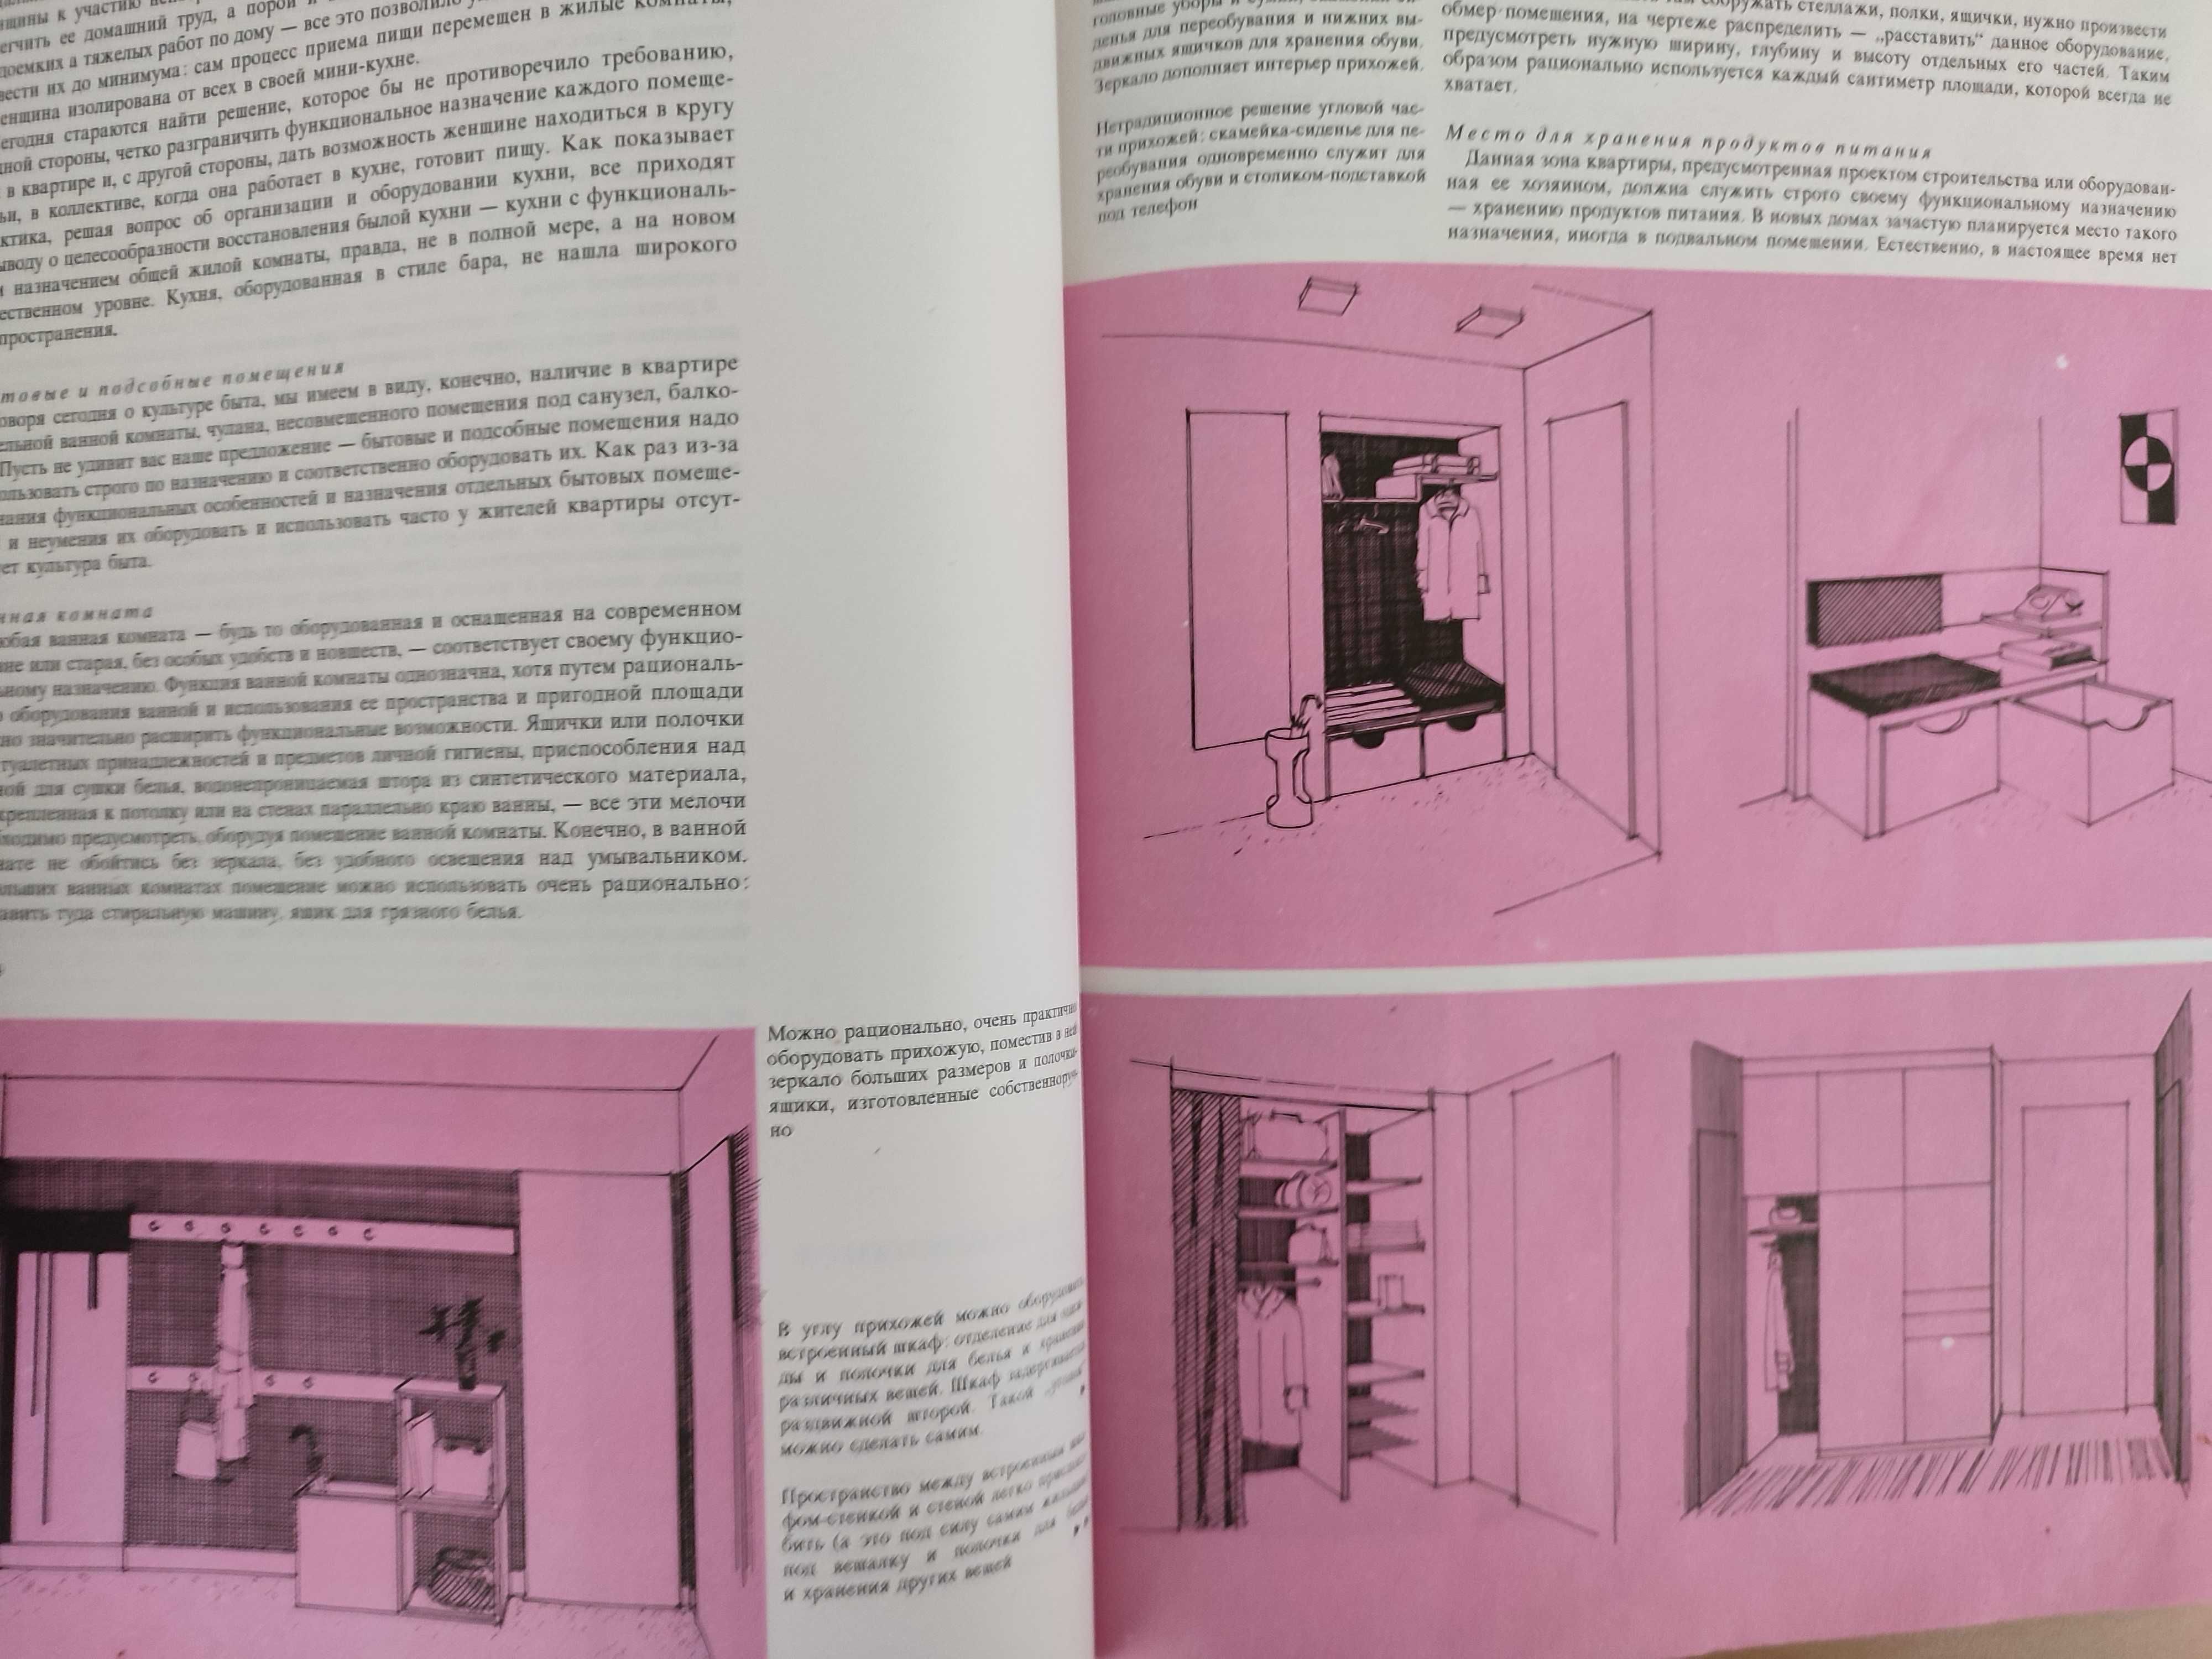 Ретро книга по дизайну интерьеров Наш дом. 1983г.